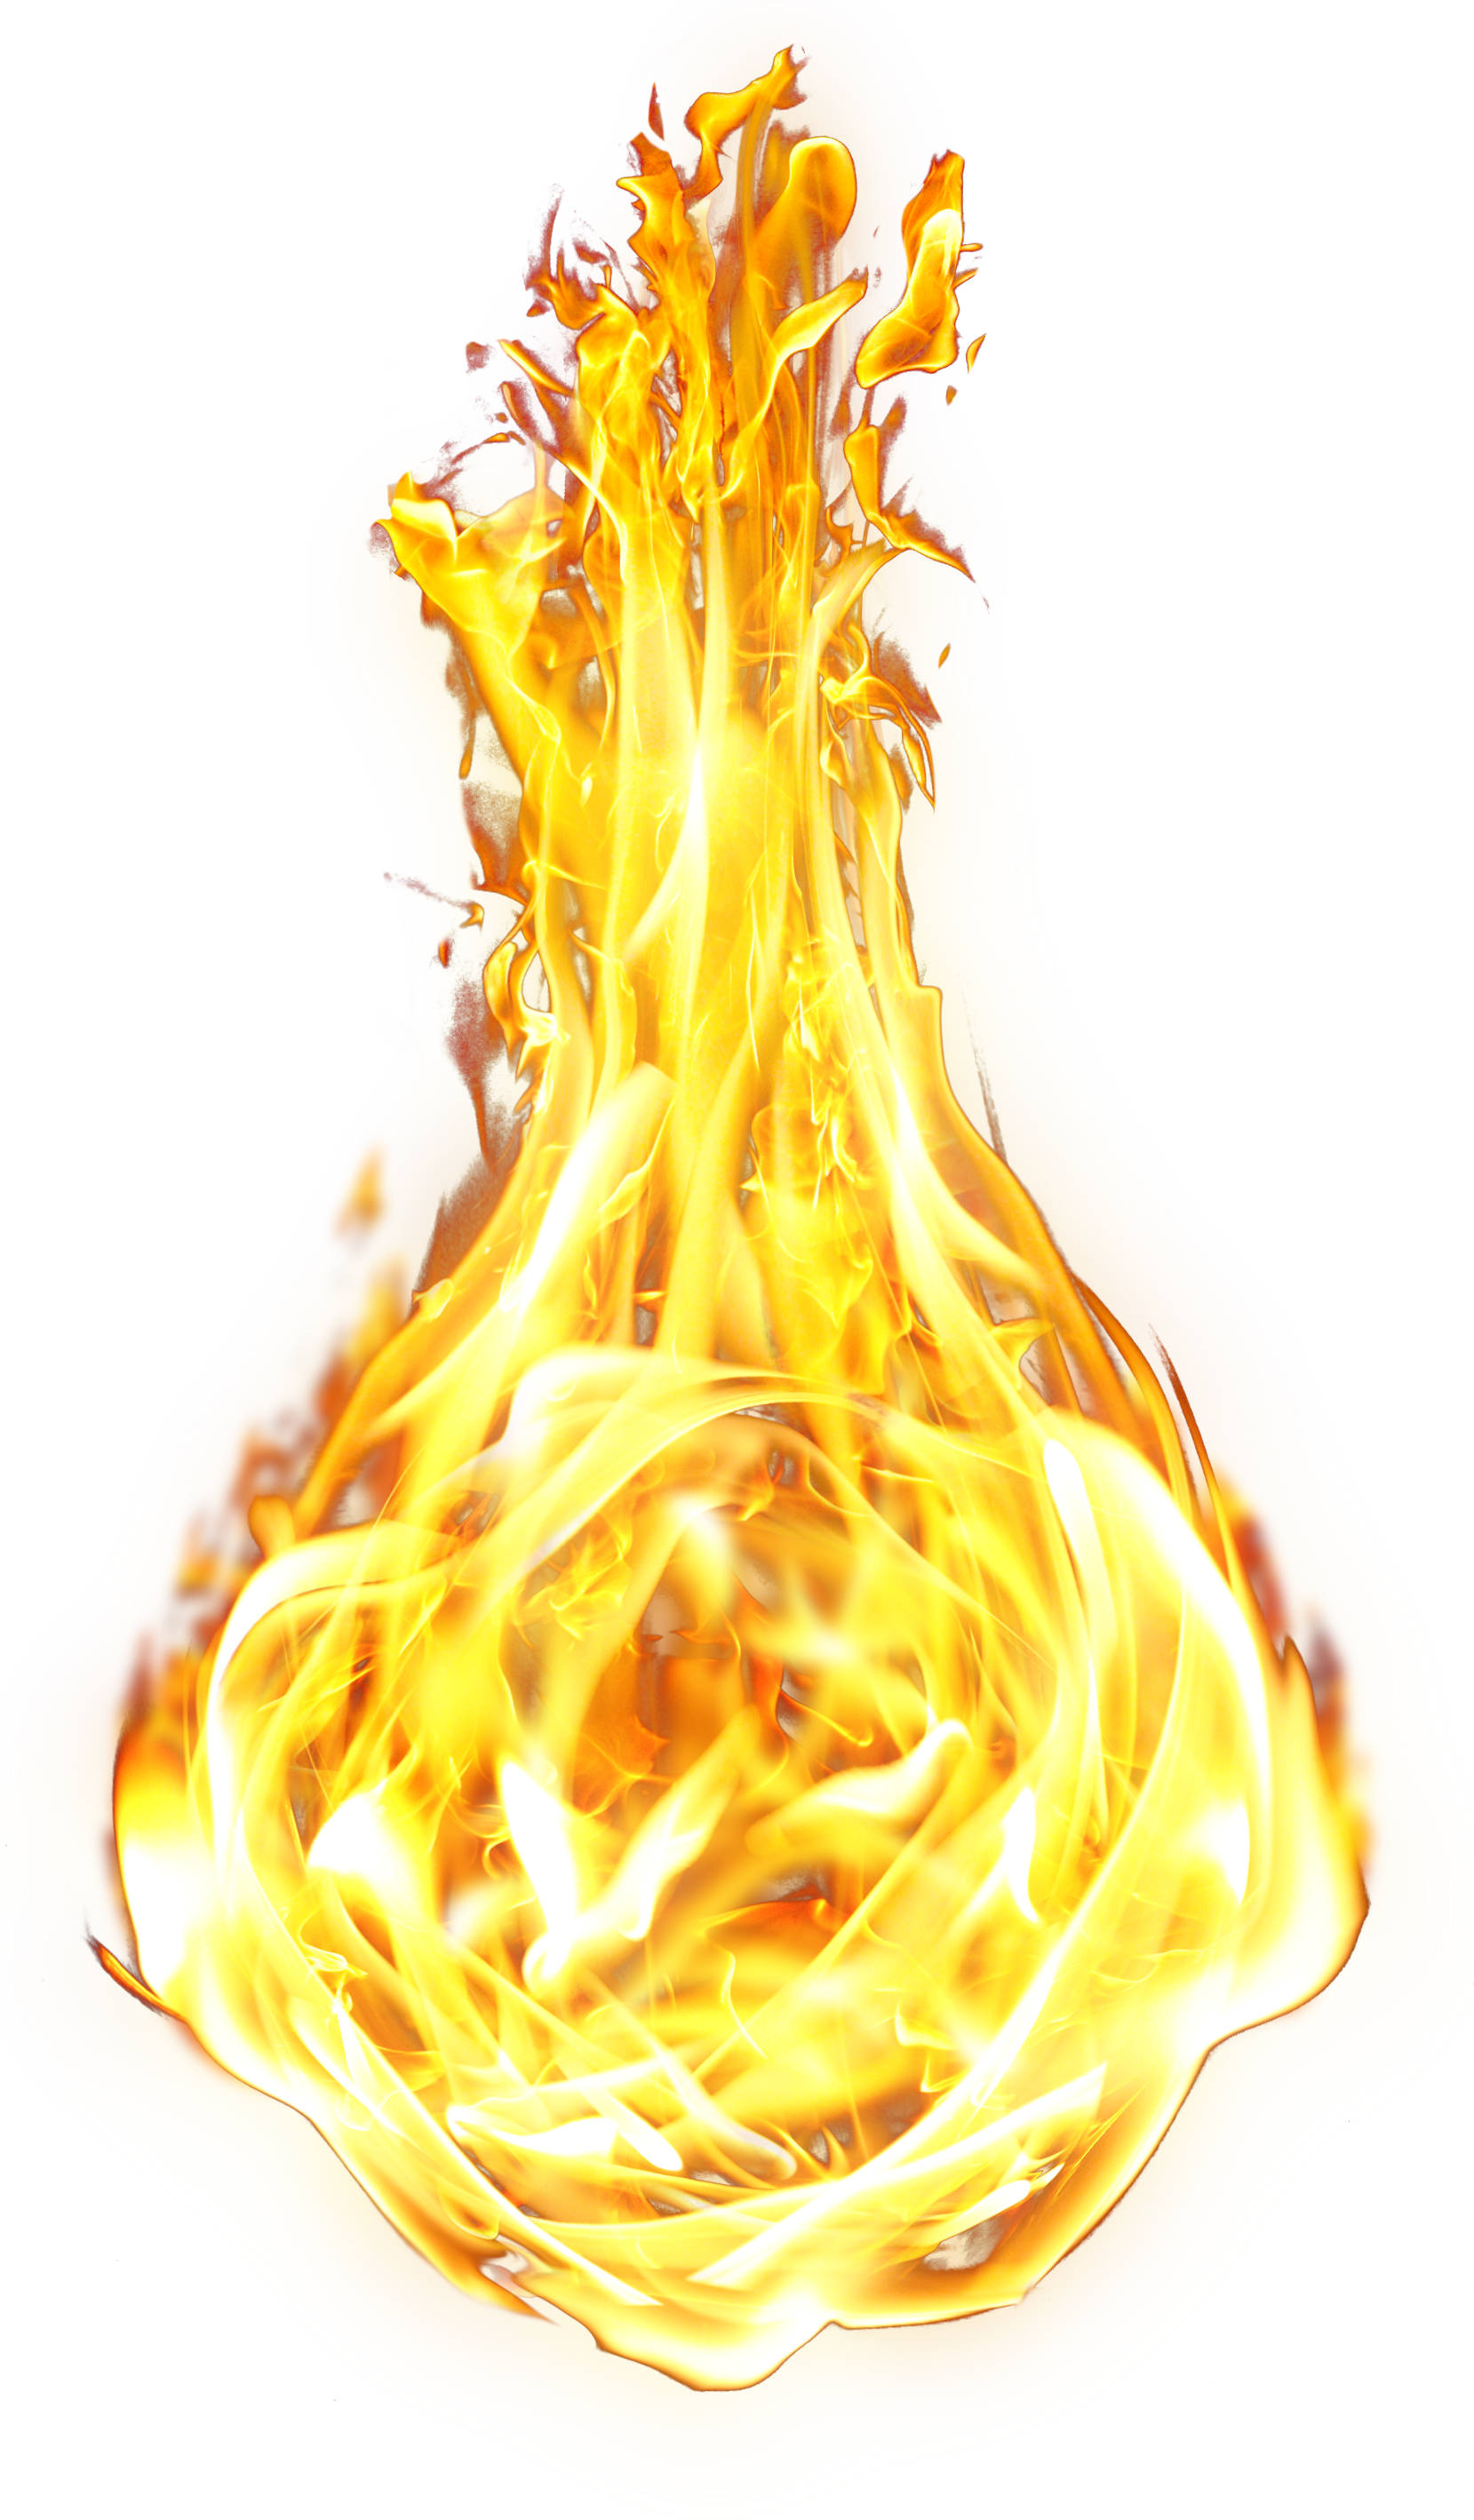 Hình ảnh chữa cháy PNG: Được thiết kế với độ chân thực và chi tiết cao, những hình ảnh chữa cháy PNG sẽ đem lại cho bạn cảm giác an toàn và chững chạc hơn. Khám phá những hình ảnh đặc biệt này với chất lượng tuyệt vời.